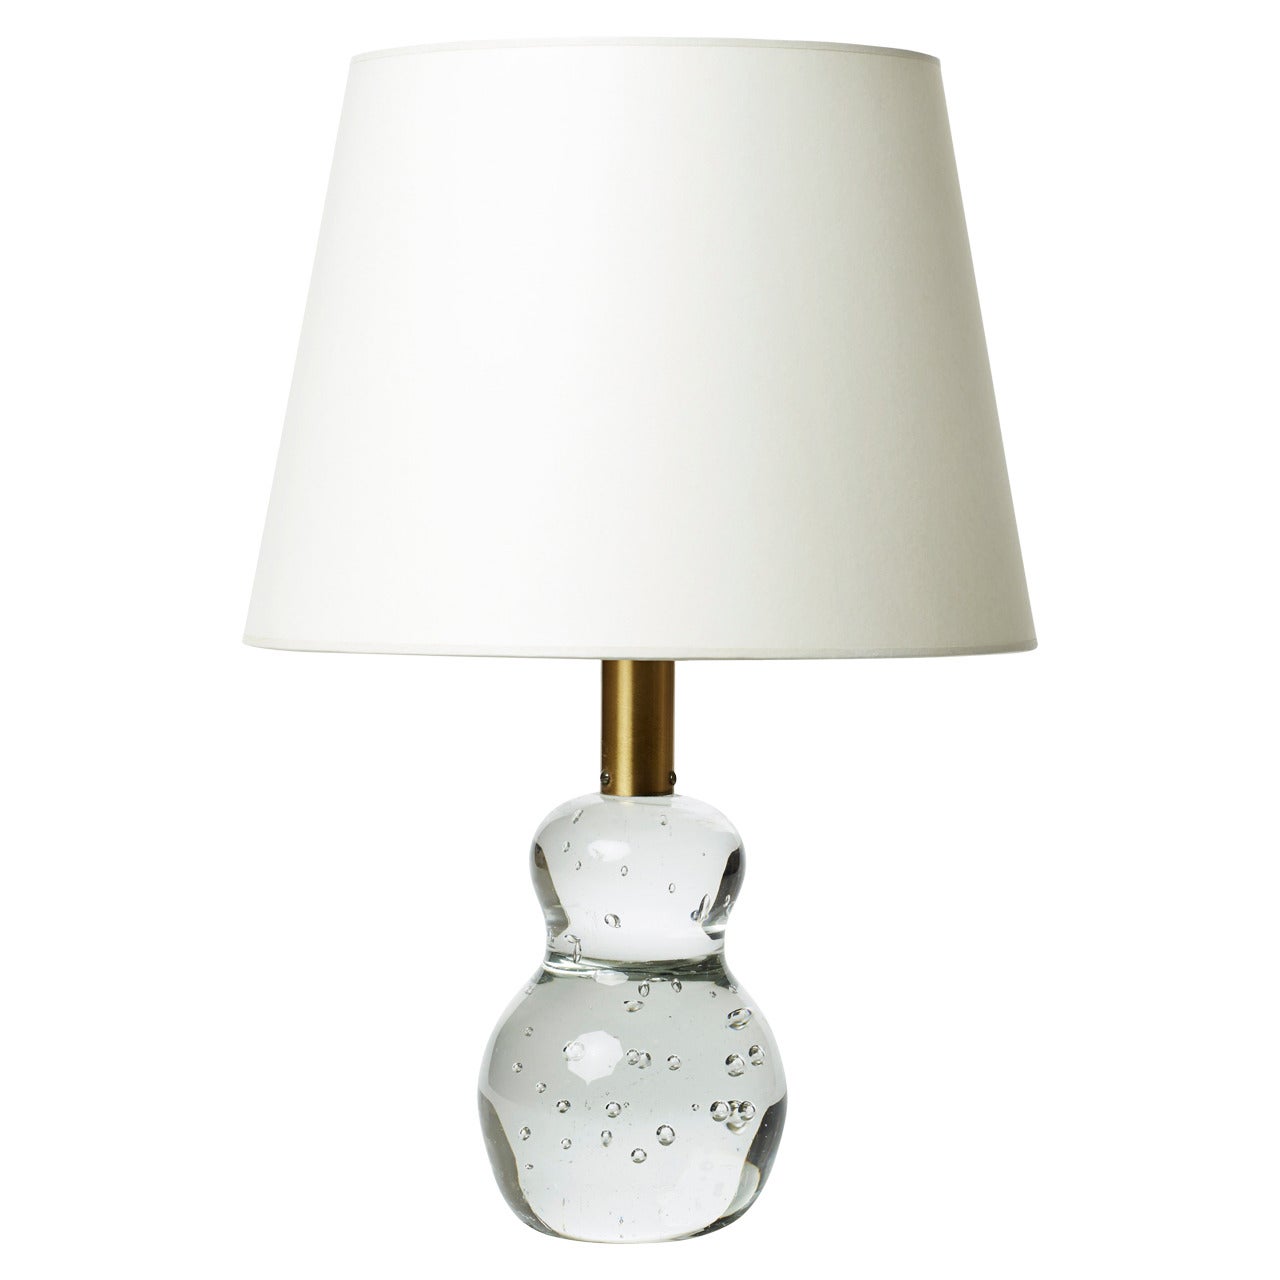 Calabash Shape Lamp in Glass by Josef Frank for Svenskt Tenn For Sale